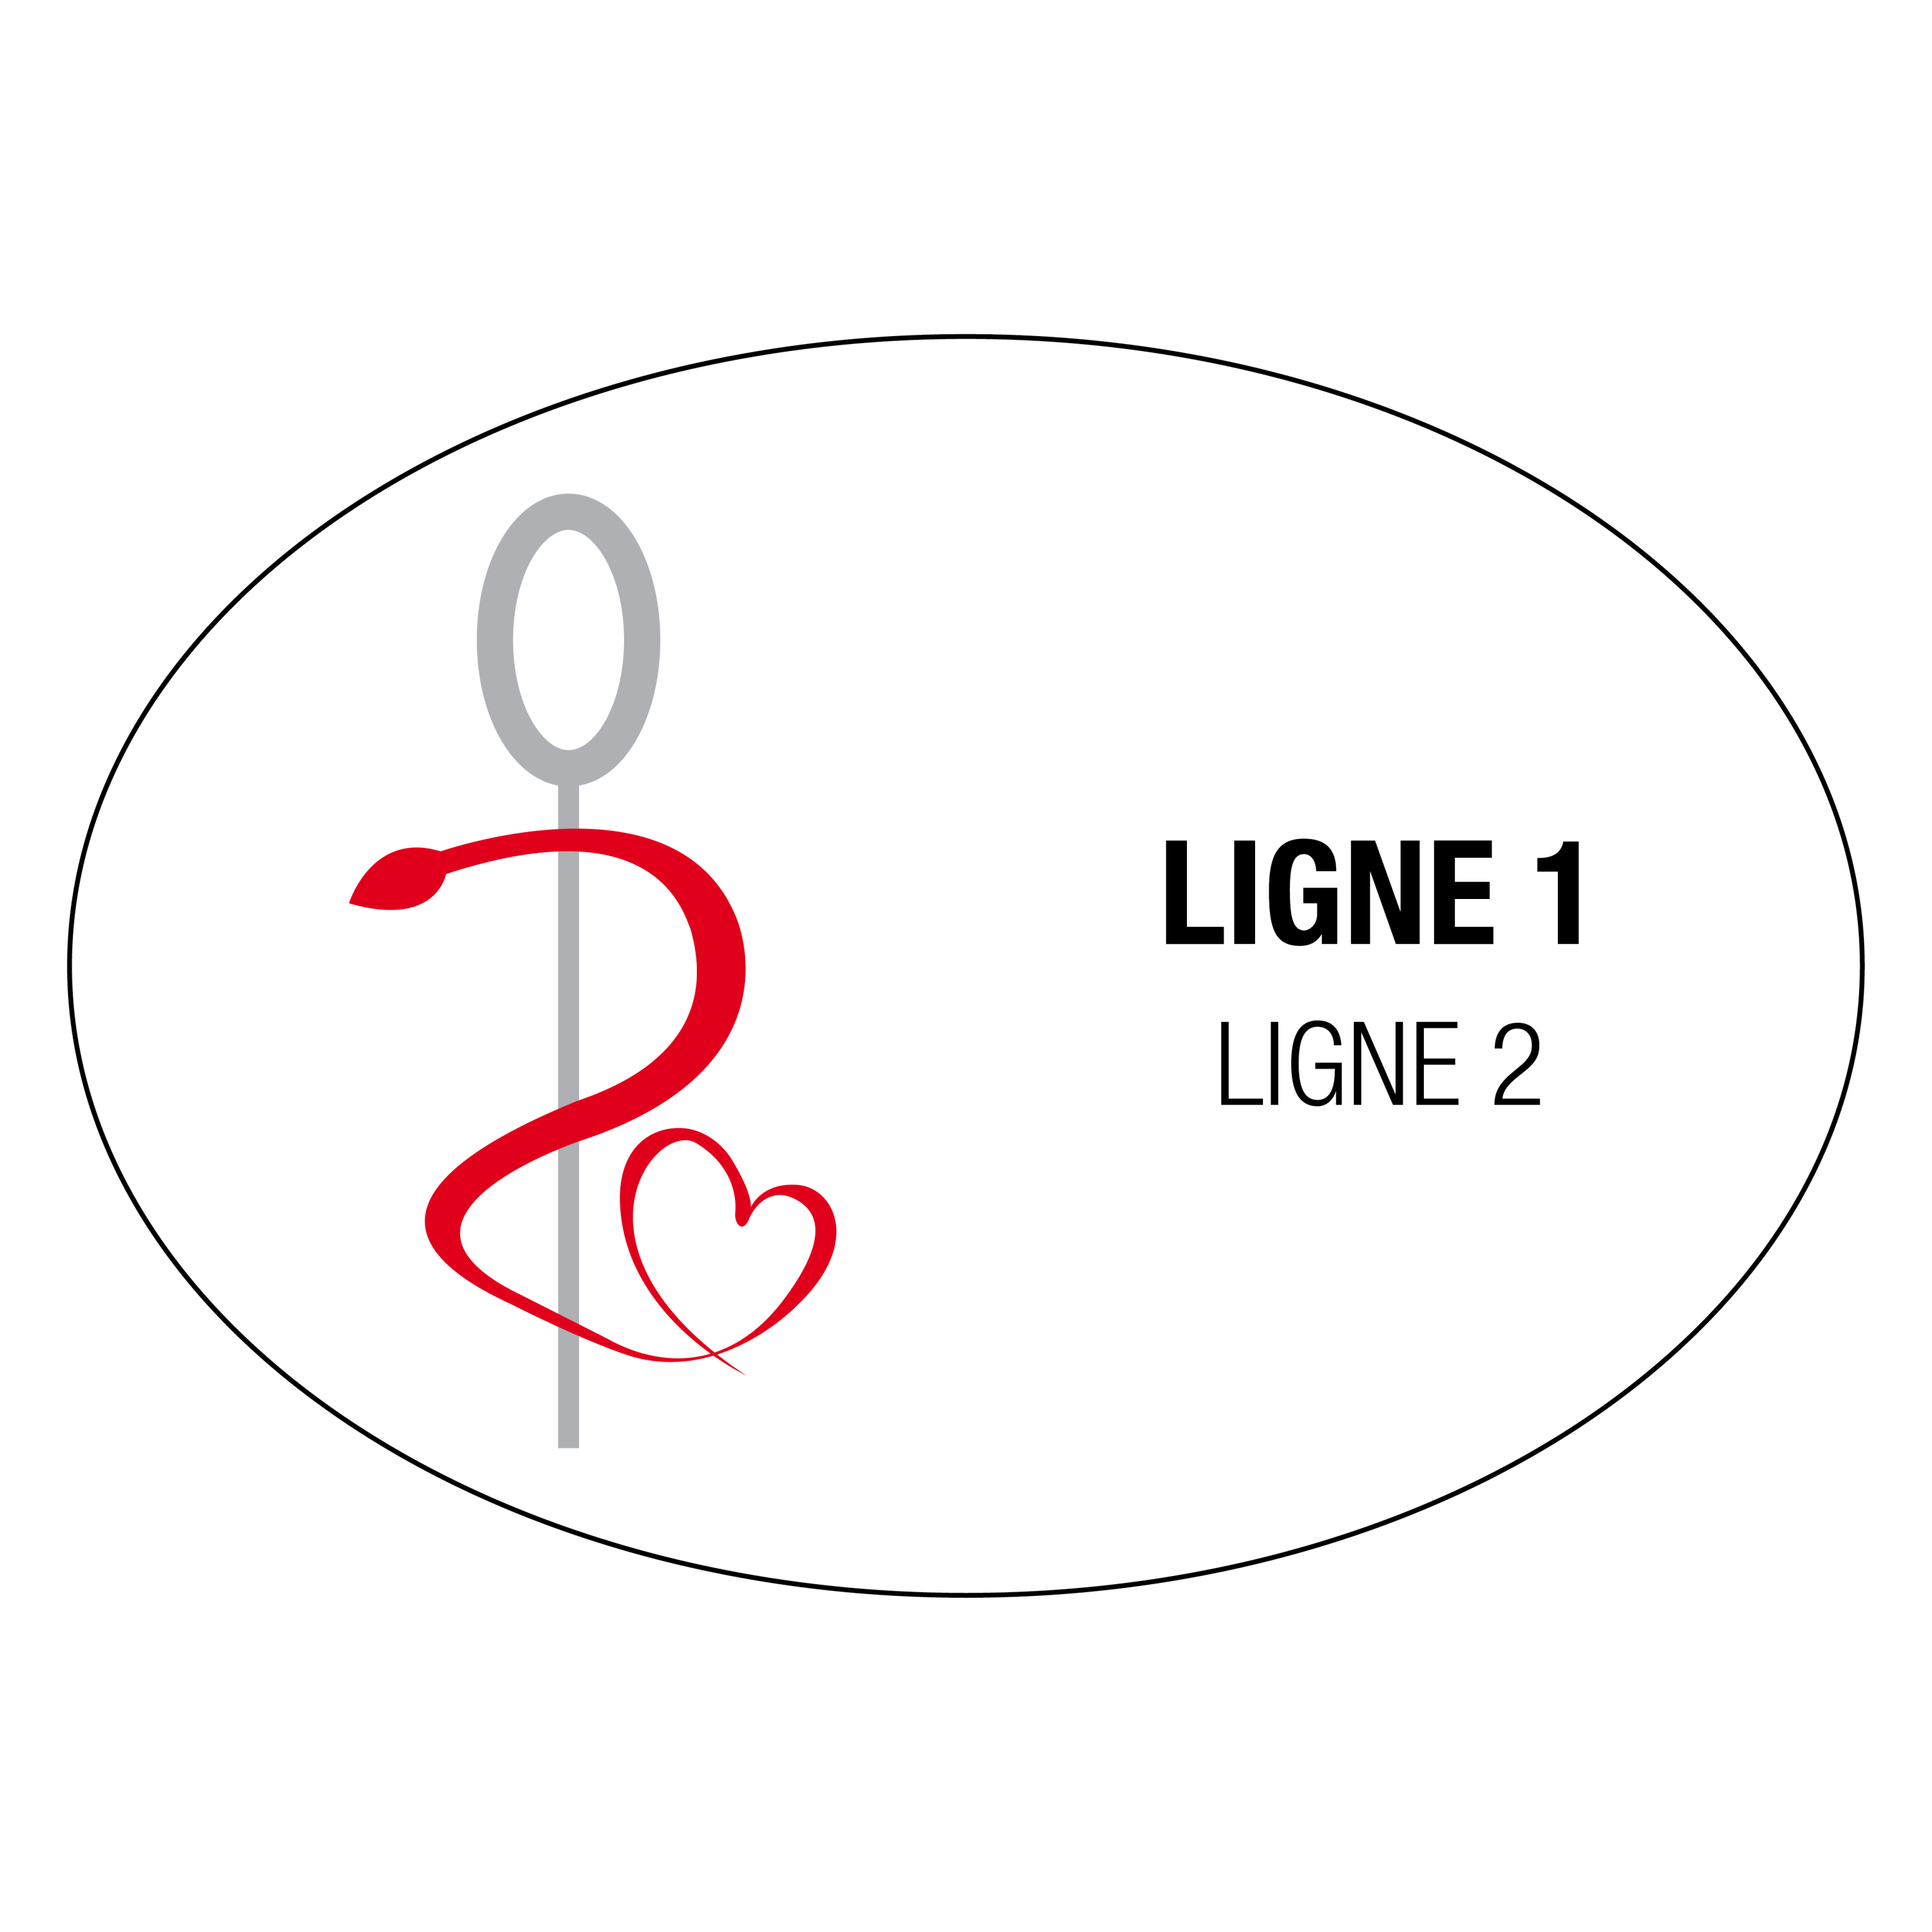 Badge Infirmière Coeur avec prénom personnalisable